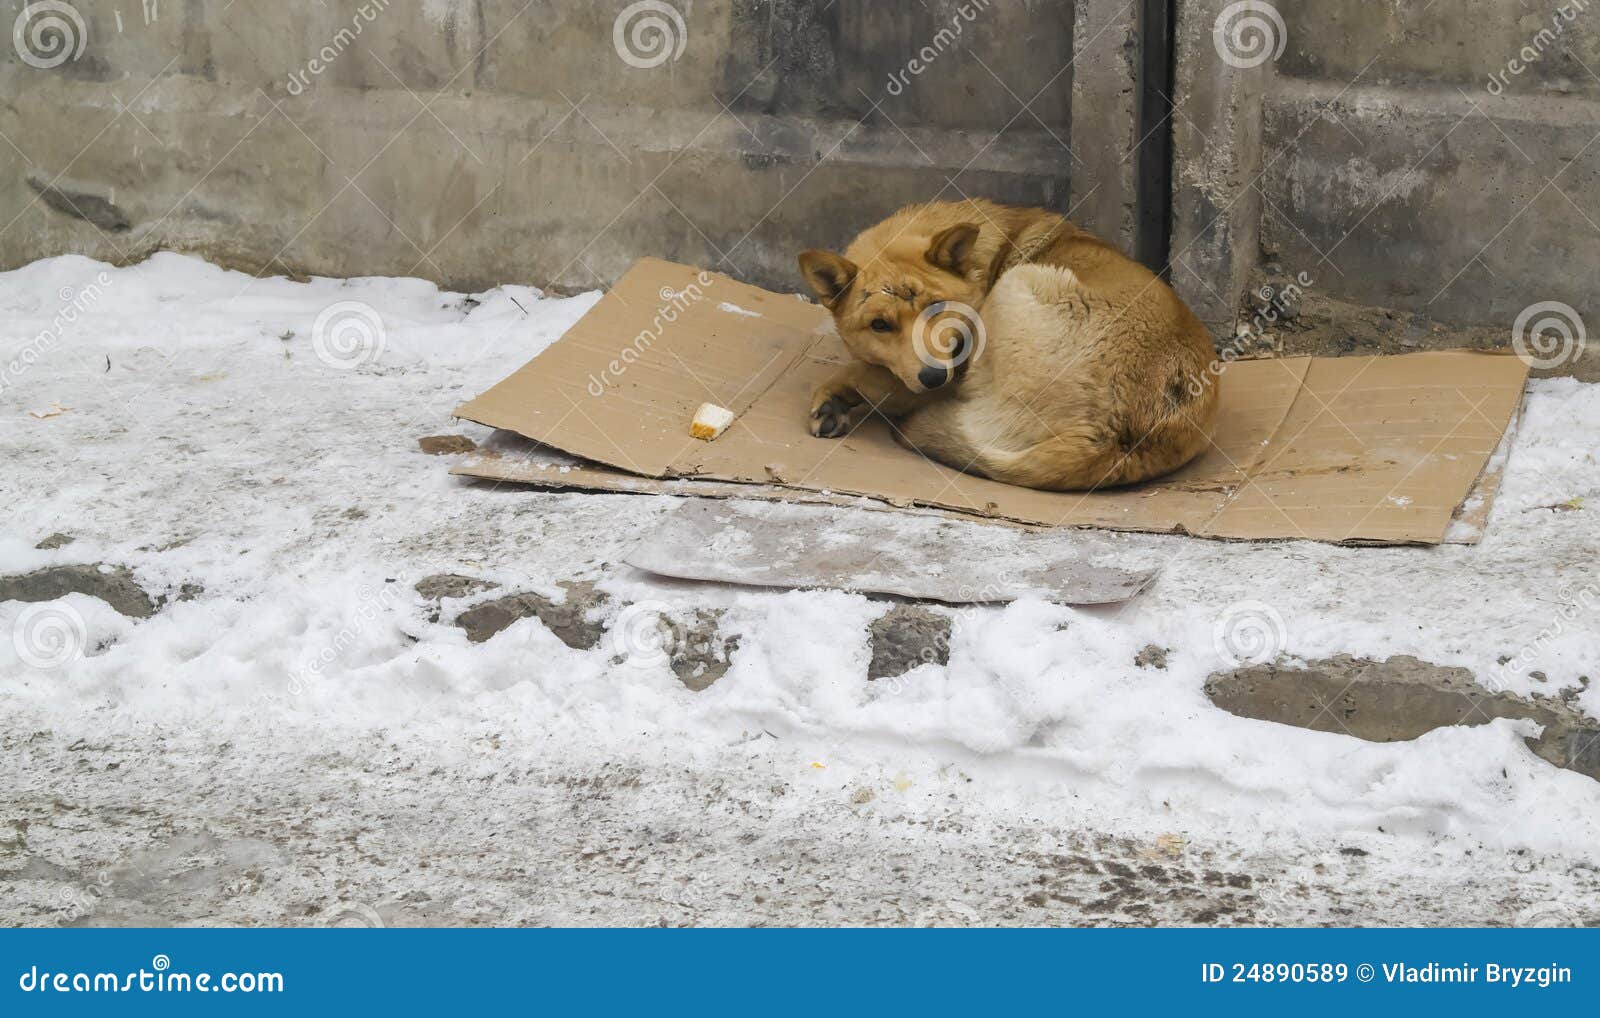 Бездомные животные зимой